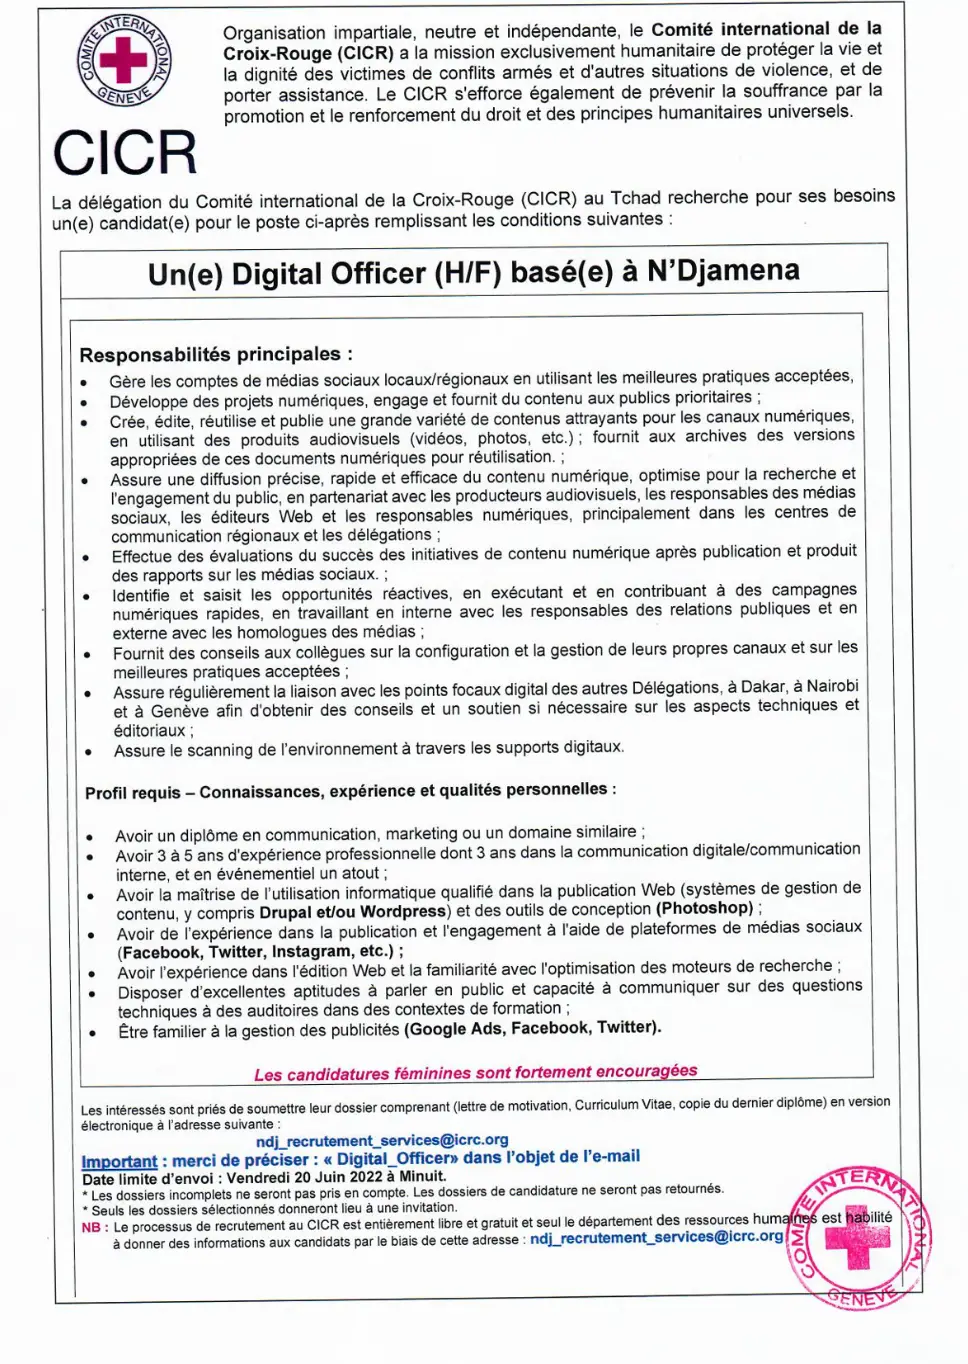 Tchad : La Délégation du CICR recrute Un(e) Digital Officer (H/F) basé(e) à N'Djamena